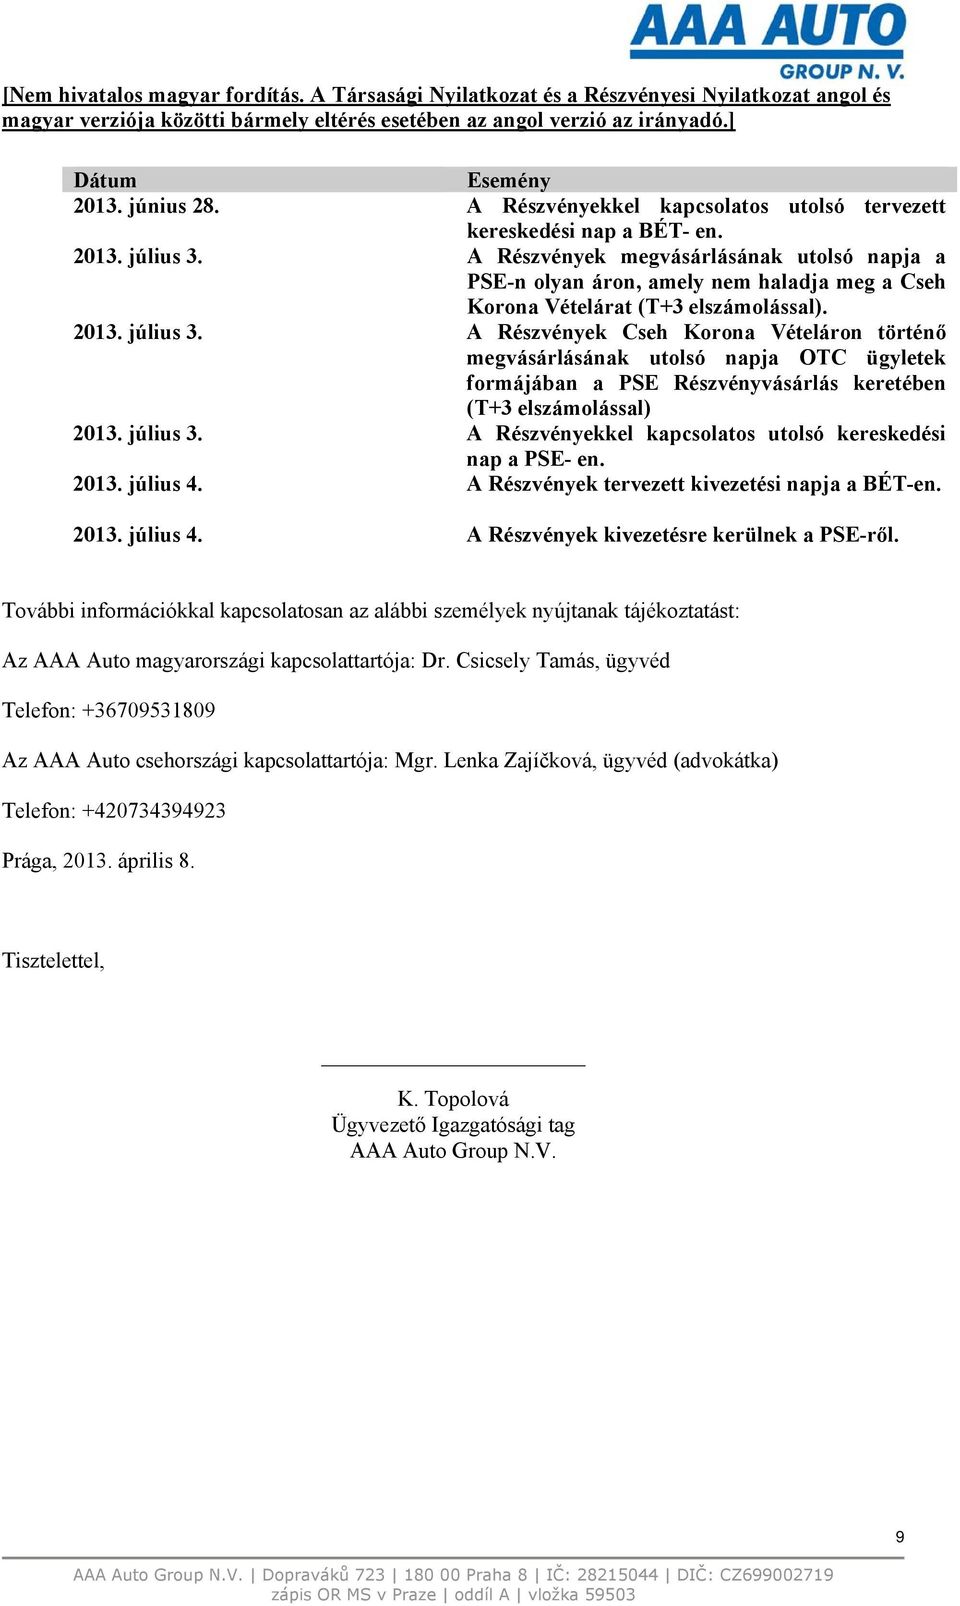 A Részvények Cseh Korona Vételáron történő megvásárlásának utolsó napja OTC ügyletek formájában a PSE Részvényvásárlás keretében (T+3 elszámolással) 2013. július 3.